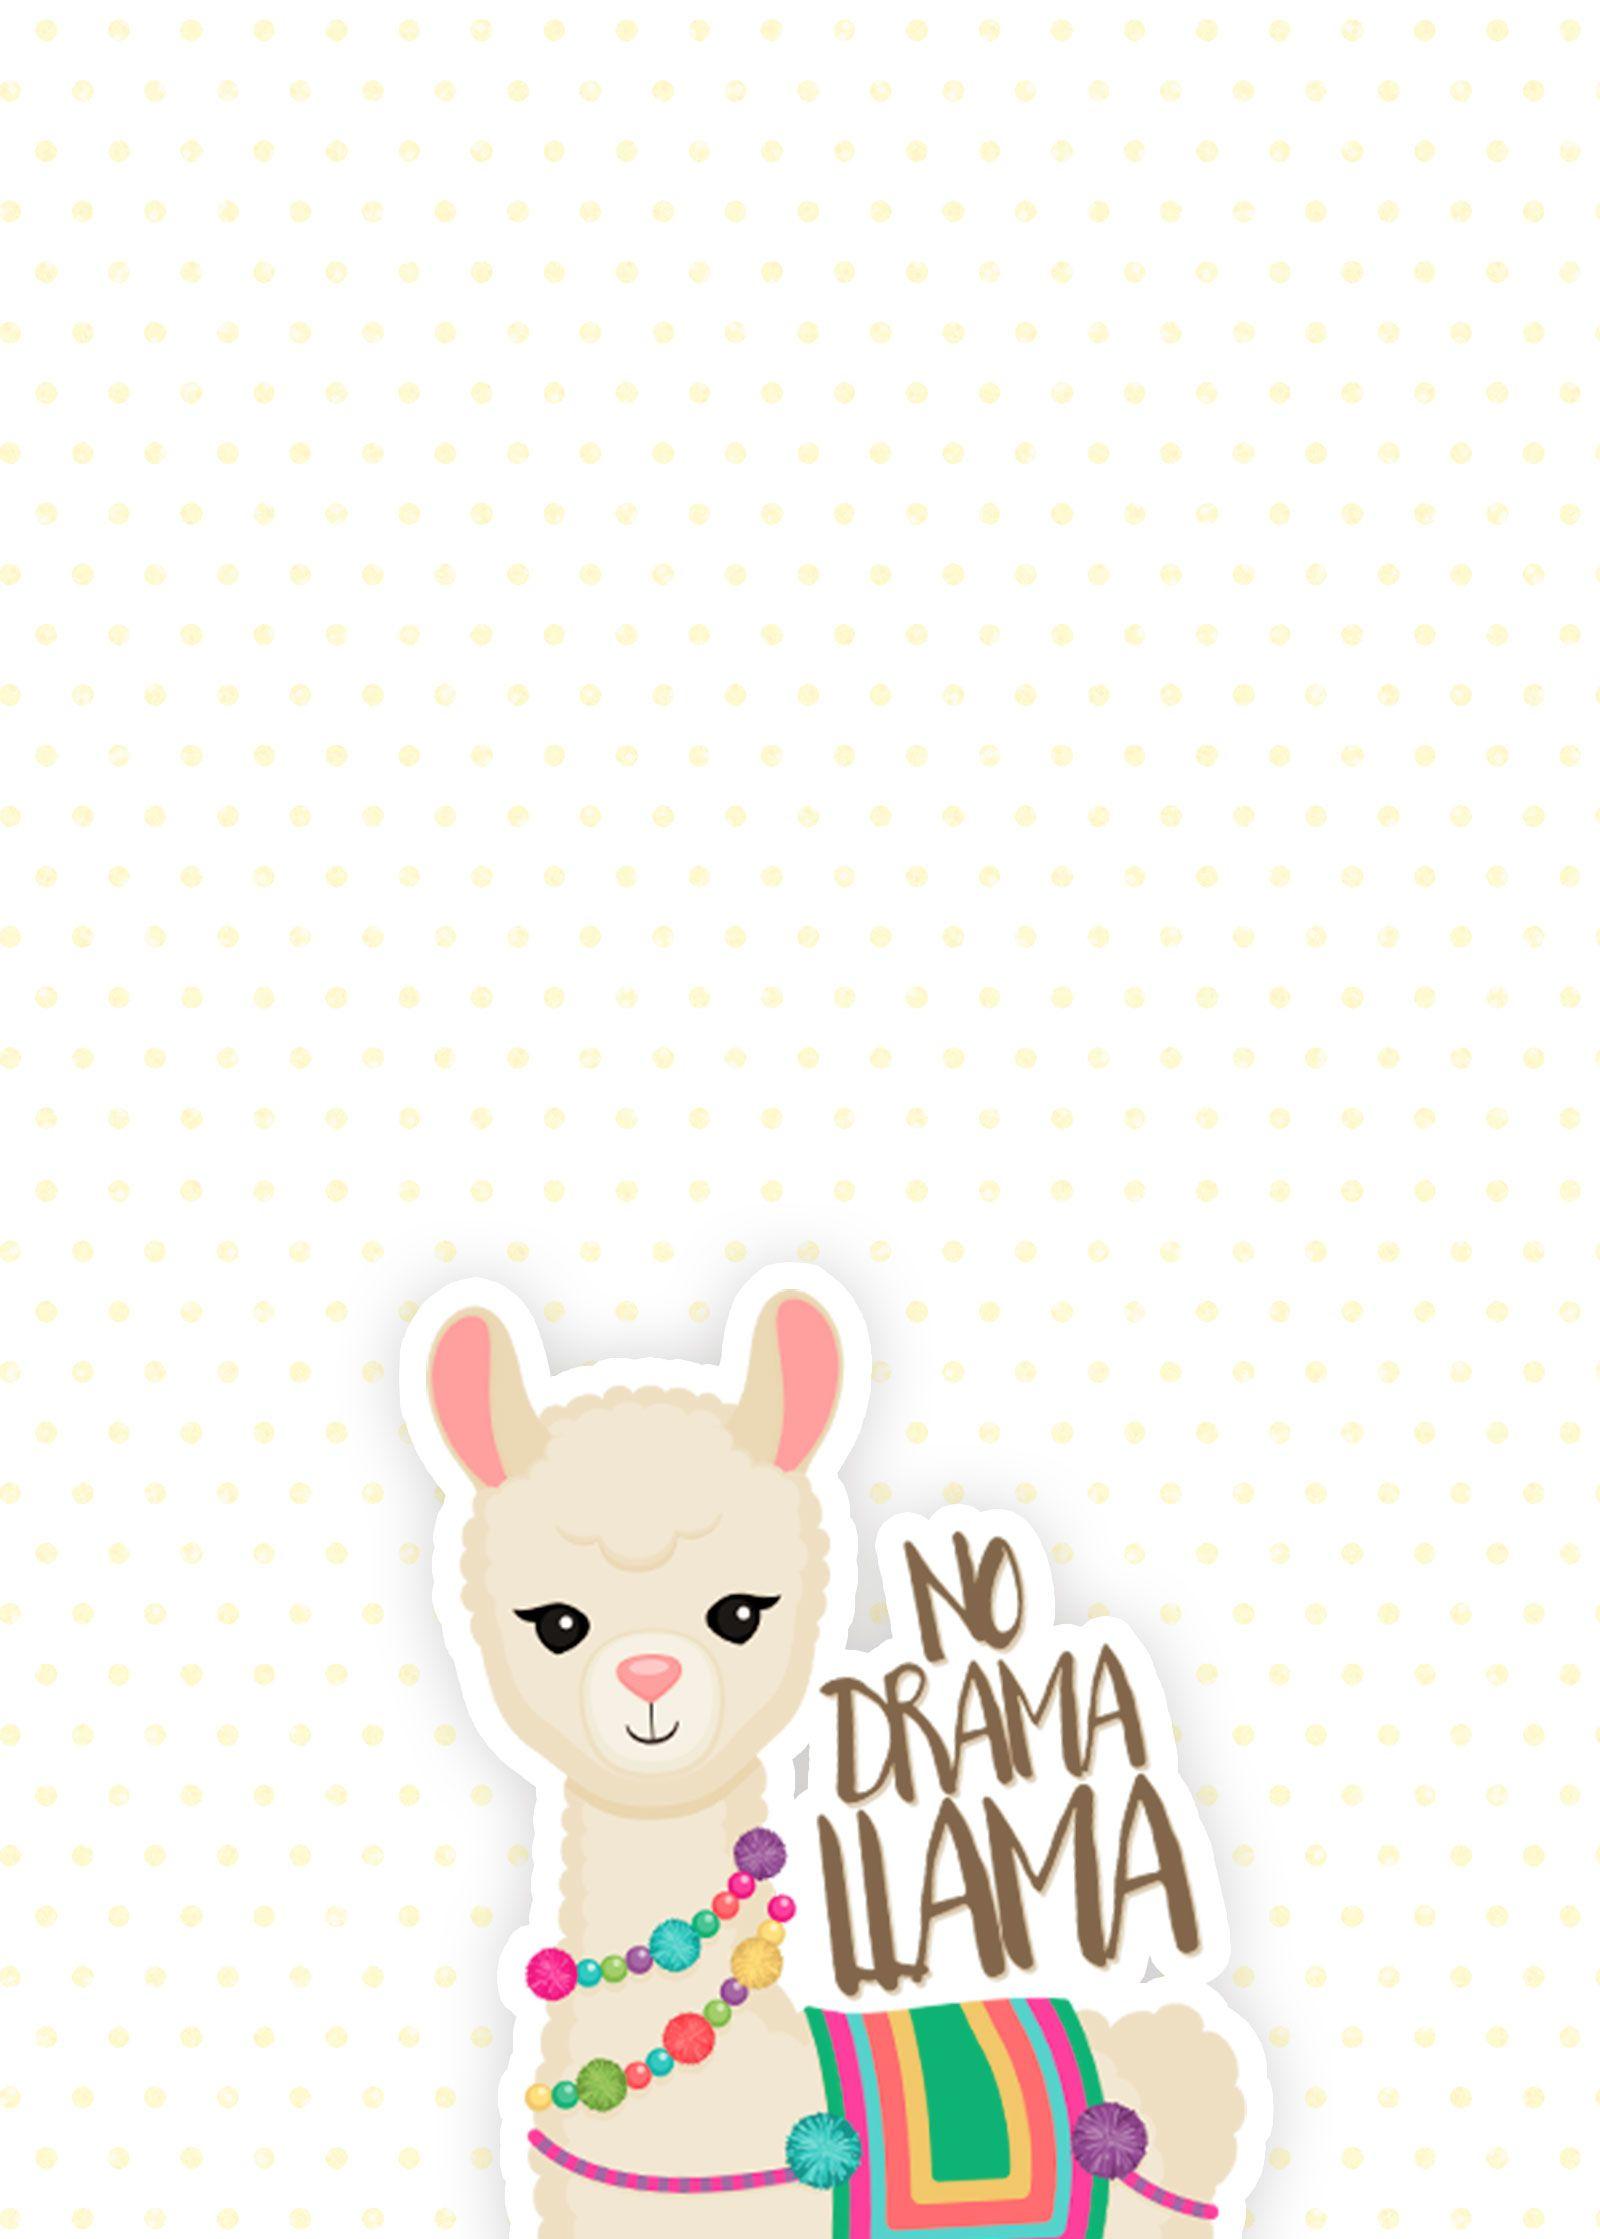 For the Love of Llamas! 10 Cutesy Llama iPhone Wallpaper. The Review Wire. iPhone wallpaper, Cute wallpaper, Cute llama